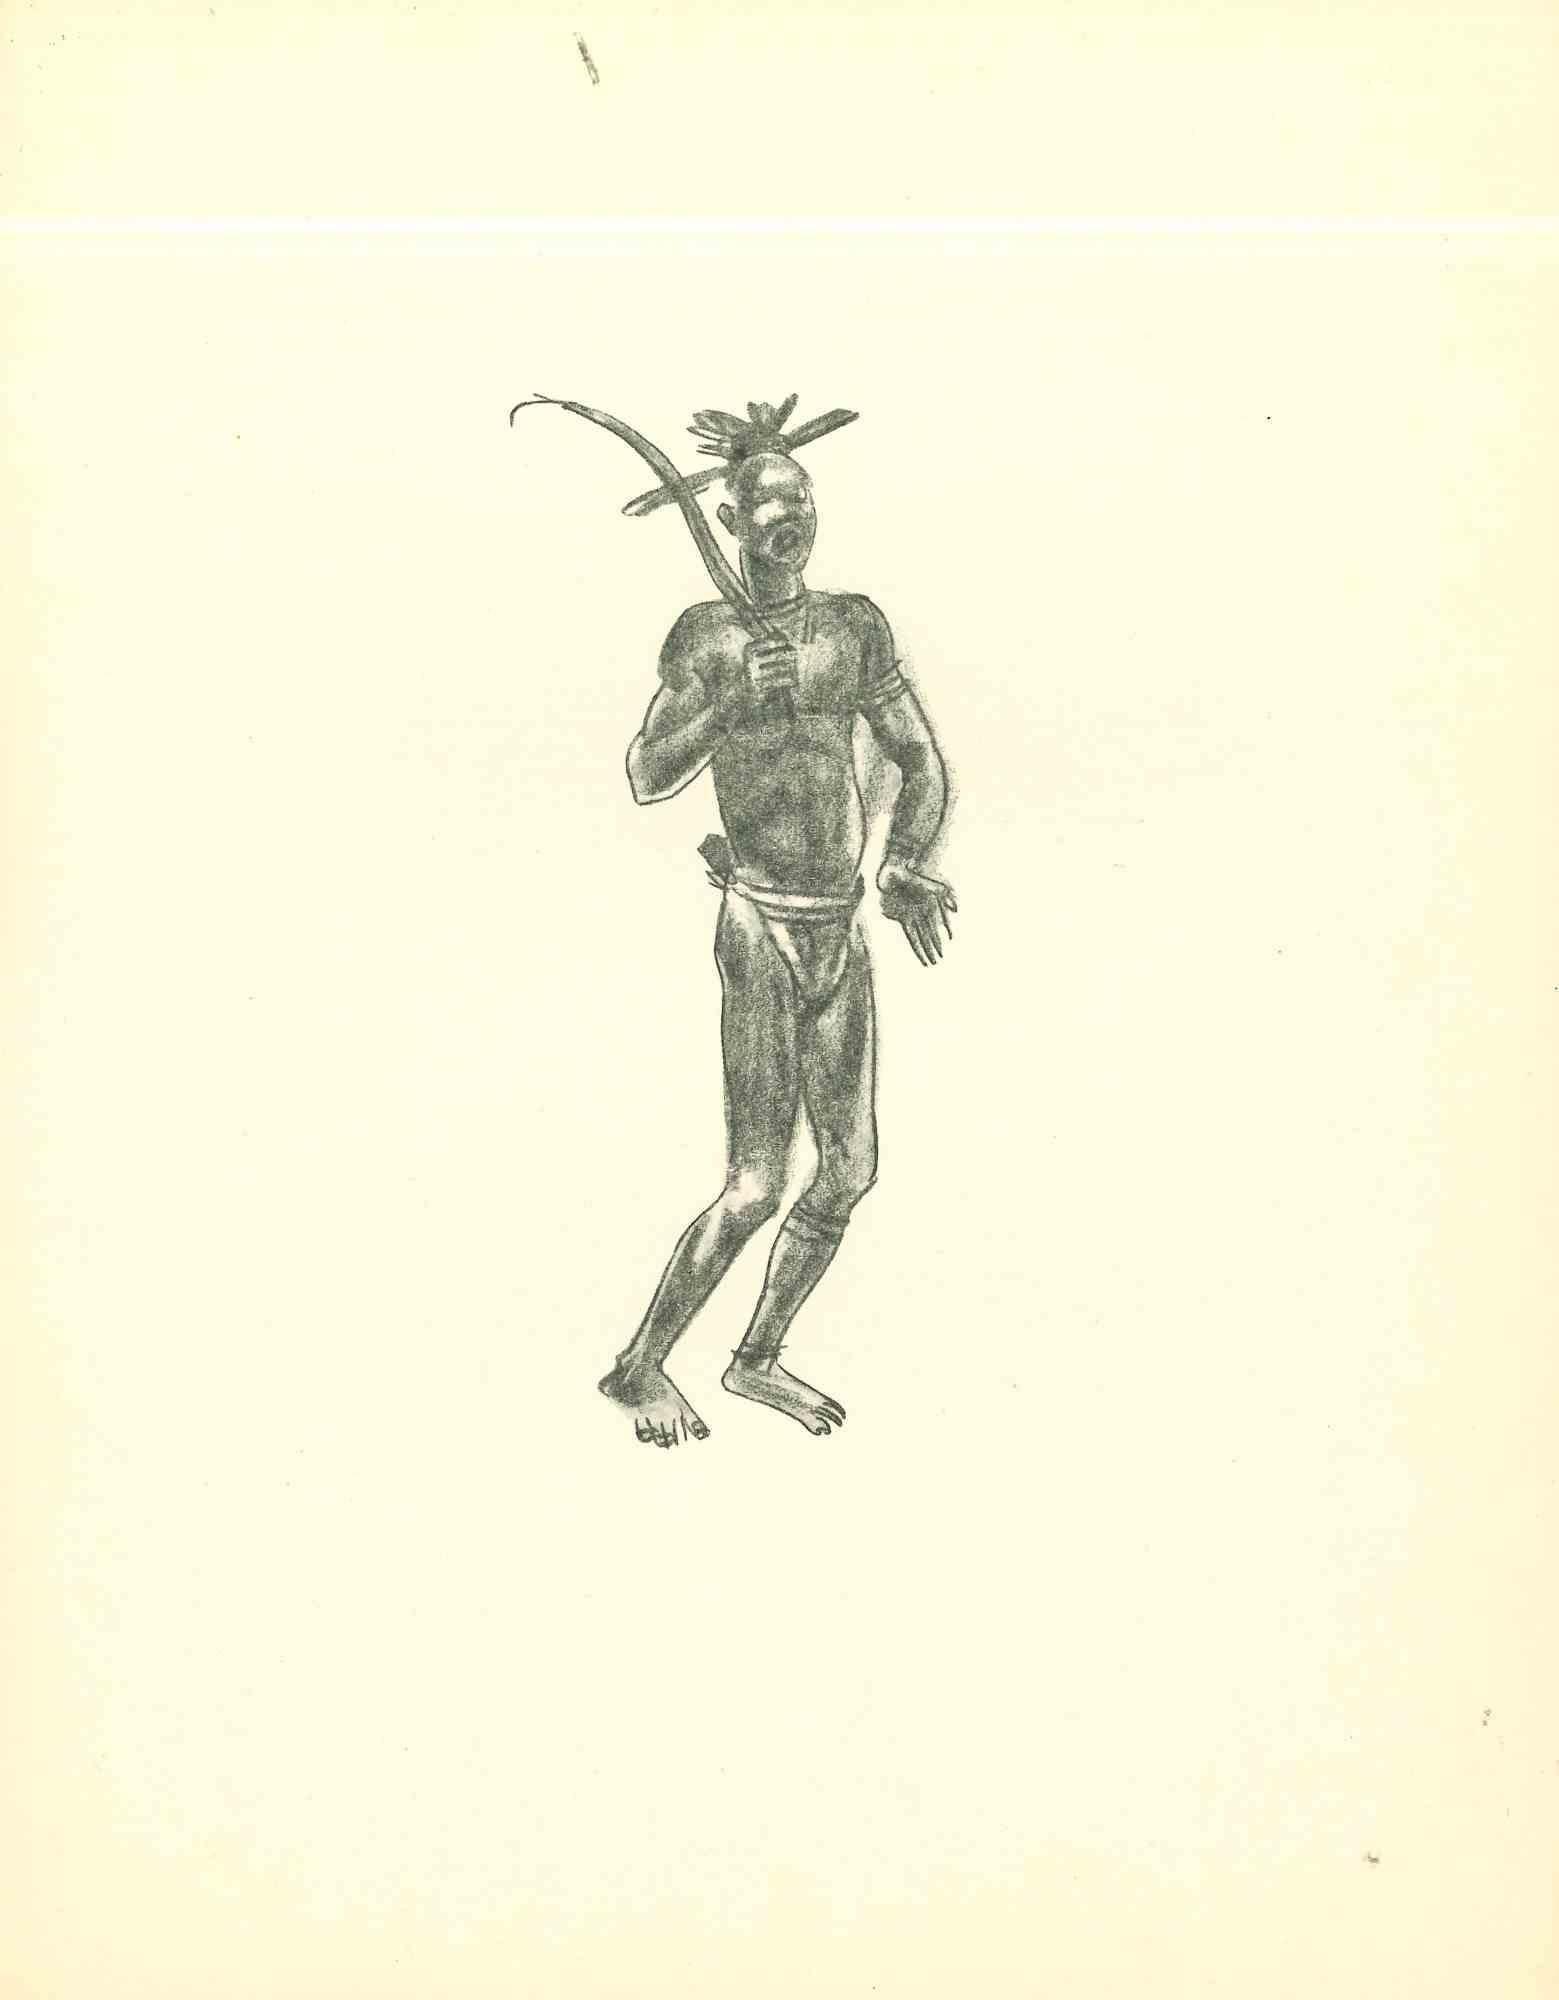 Farmer ist eine Original-Lithographie, die in den frühen 1930er Jahren von Emmanuel Gondouin (Versailles, 1883 - Parigi, 1934) angefertigt wurde. 

Das Kunstwerk ist mit kräftigen Strichen dargestellt und gehört zu einer Serie mit dem Titel